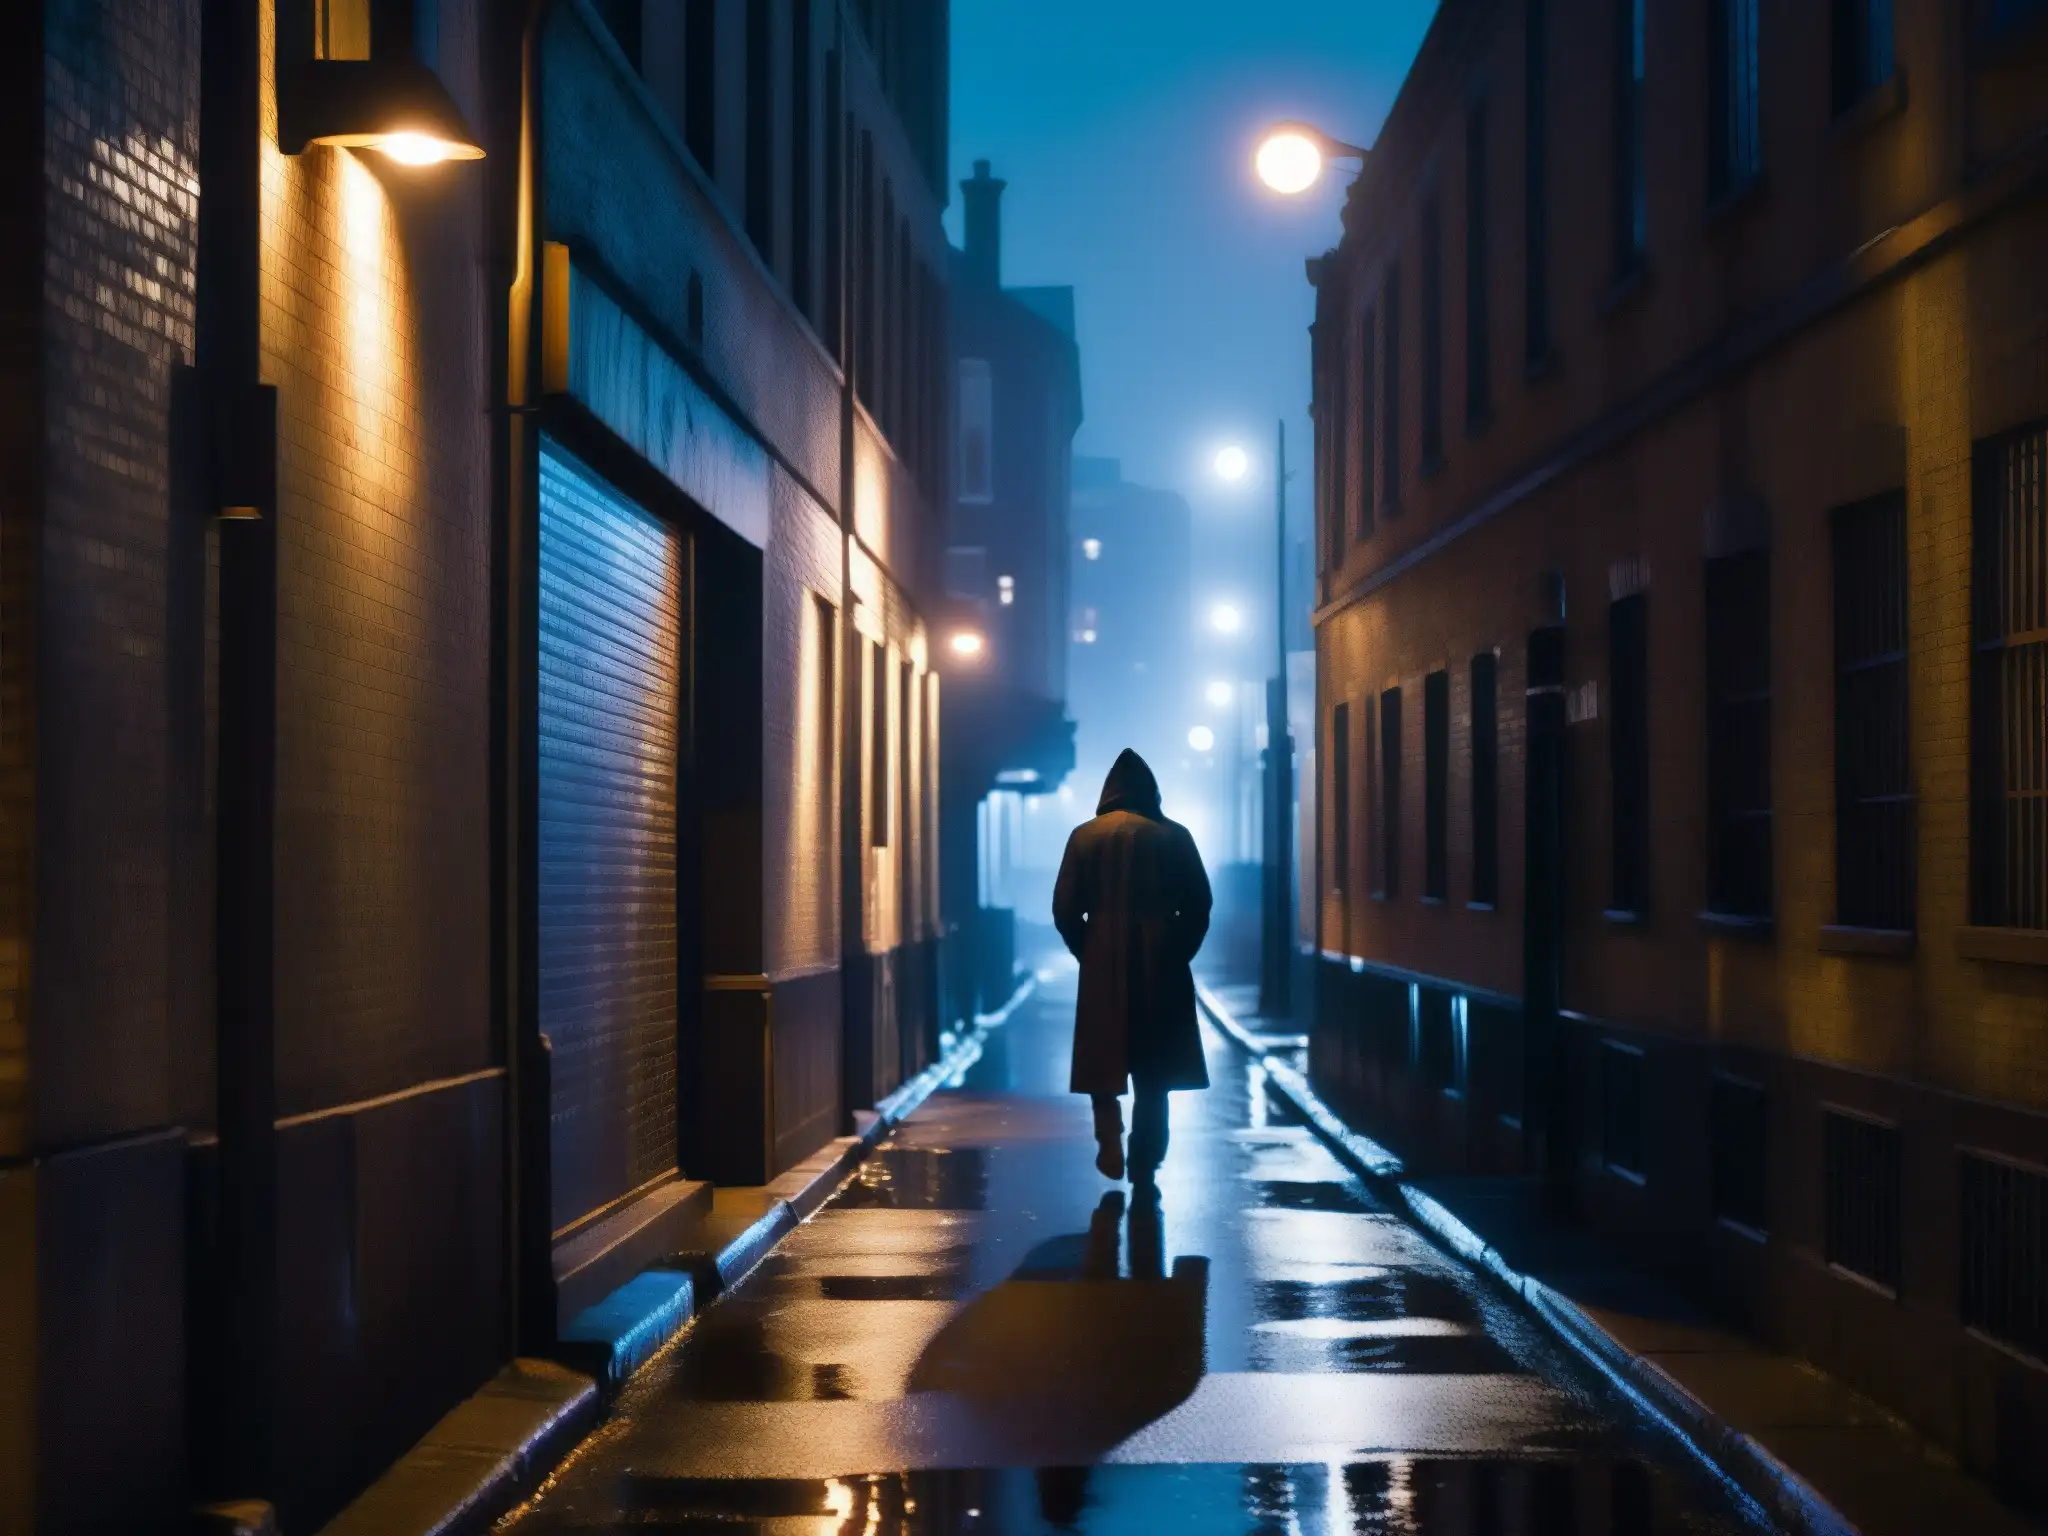 Un callejón sombrío de noche con figuras misteriosas y luces parpadeantes, capturando el psicoanálisis de leyendas urbanas miedo